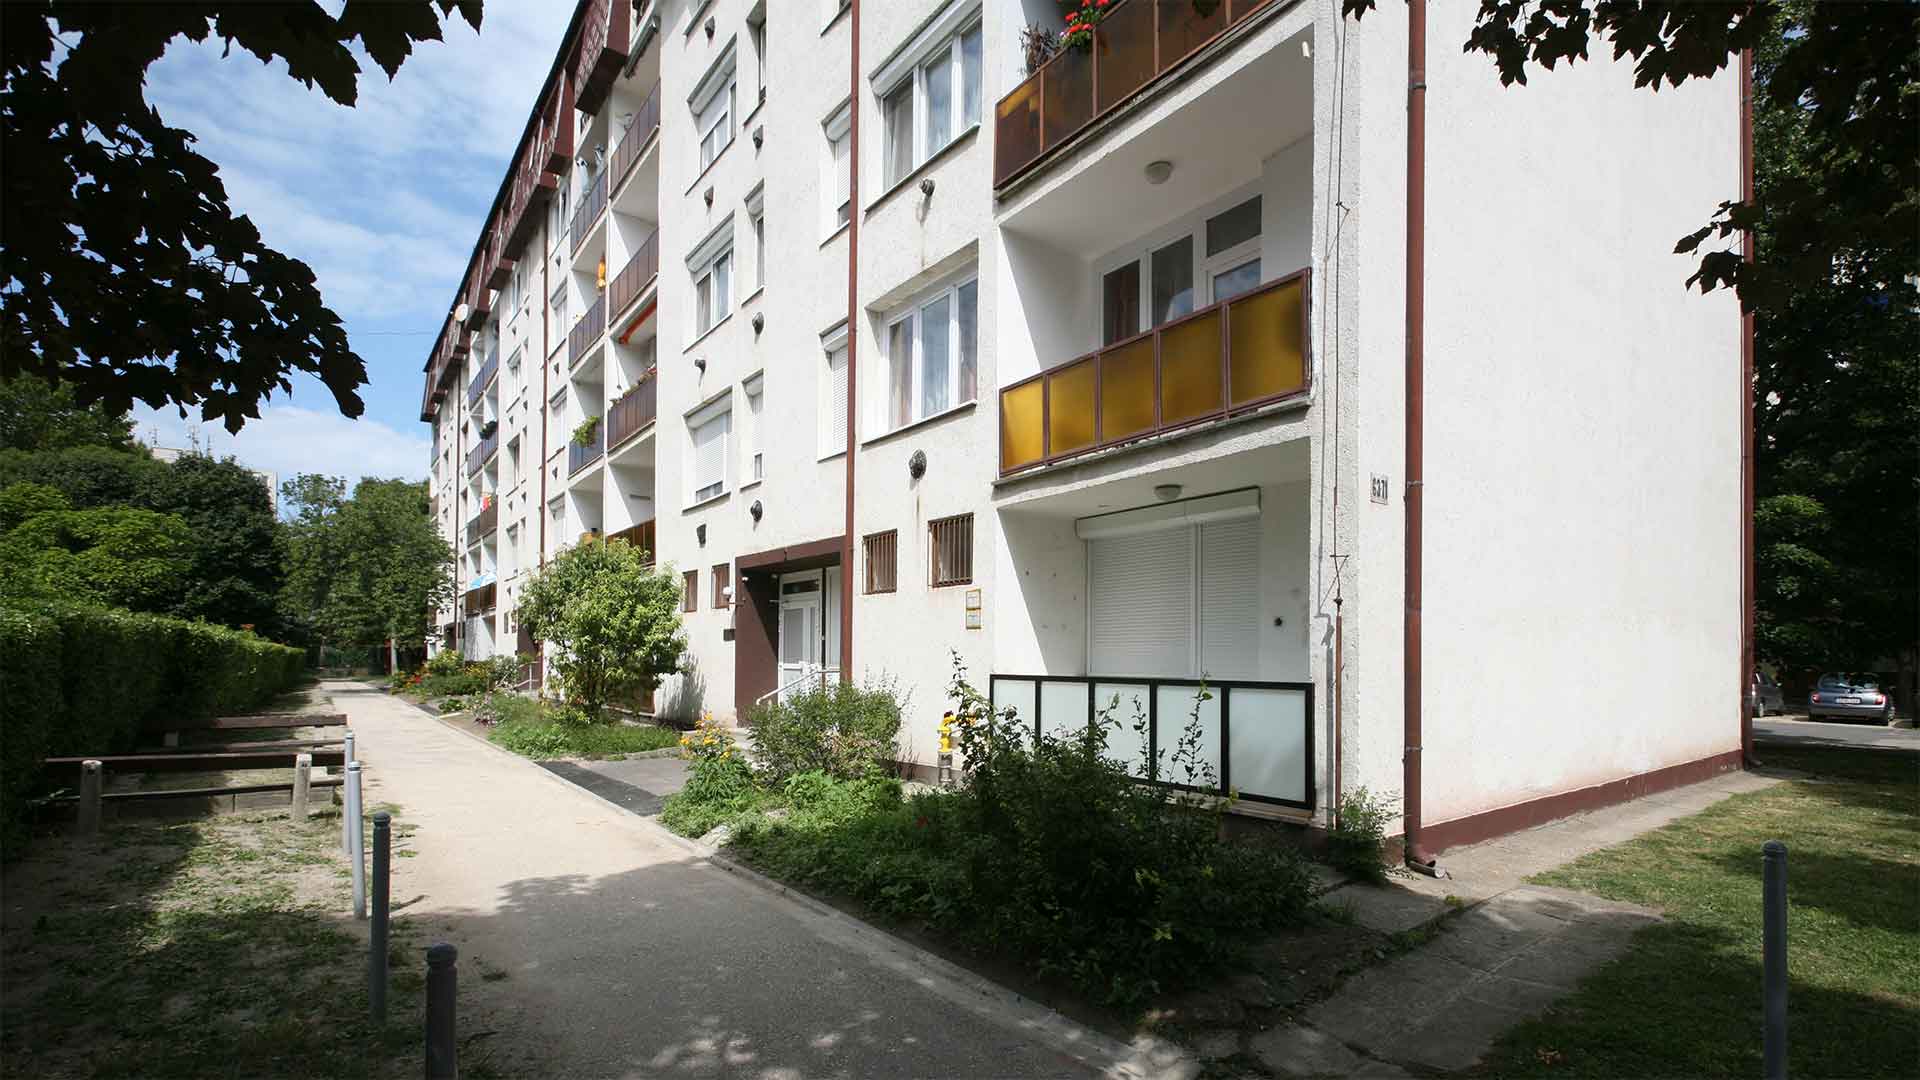 Siófok, Bajcsy-Zsilinszky utca 63 - 71 sz alatti lakóépület lakásai